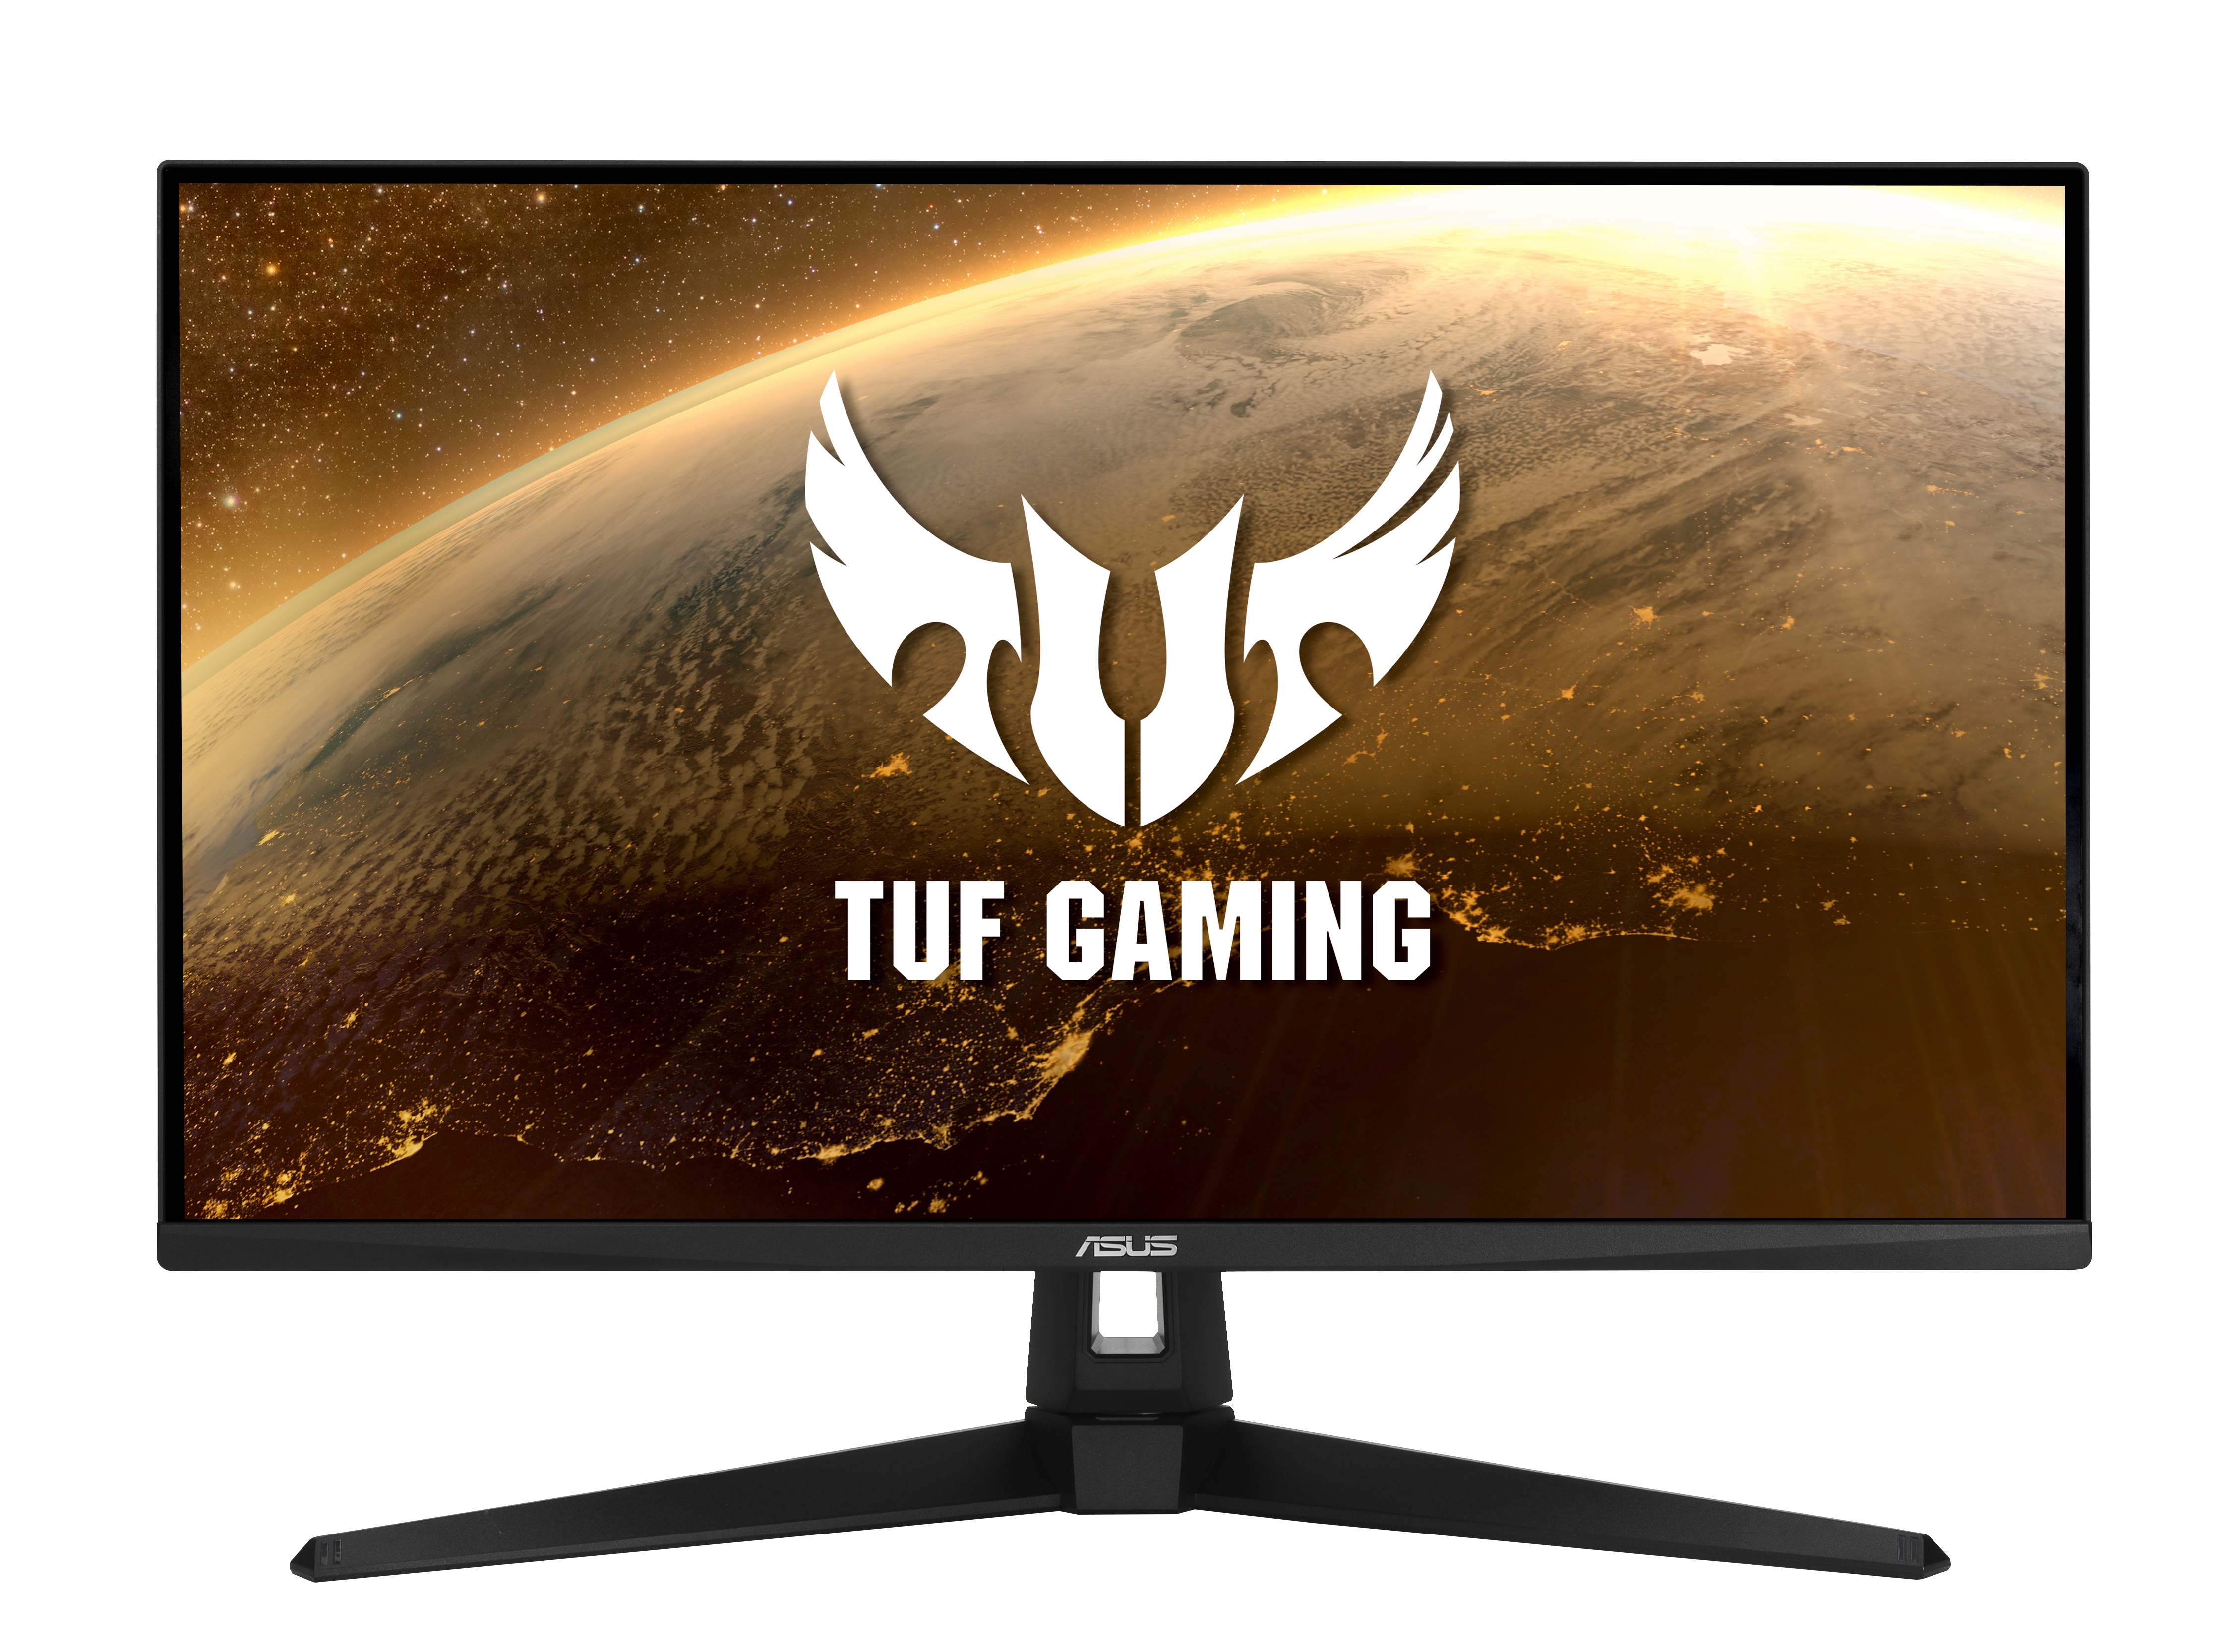 ASUS TUF Gaming VG289Q1A computer monitor